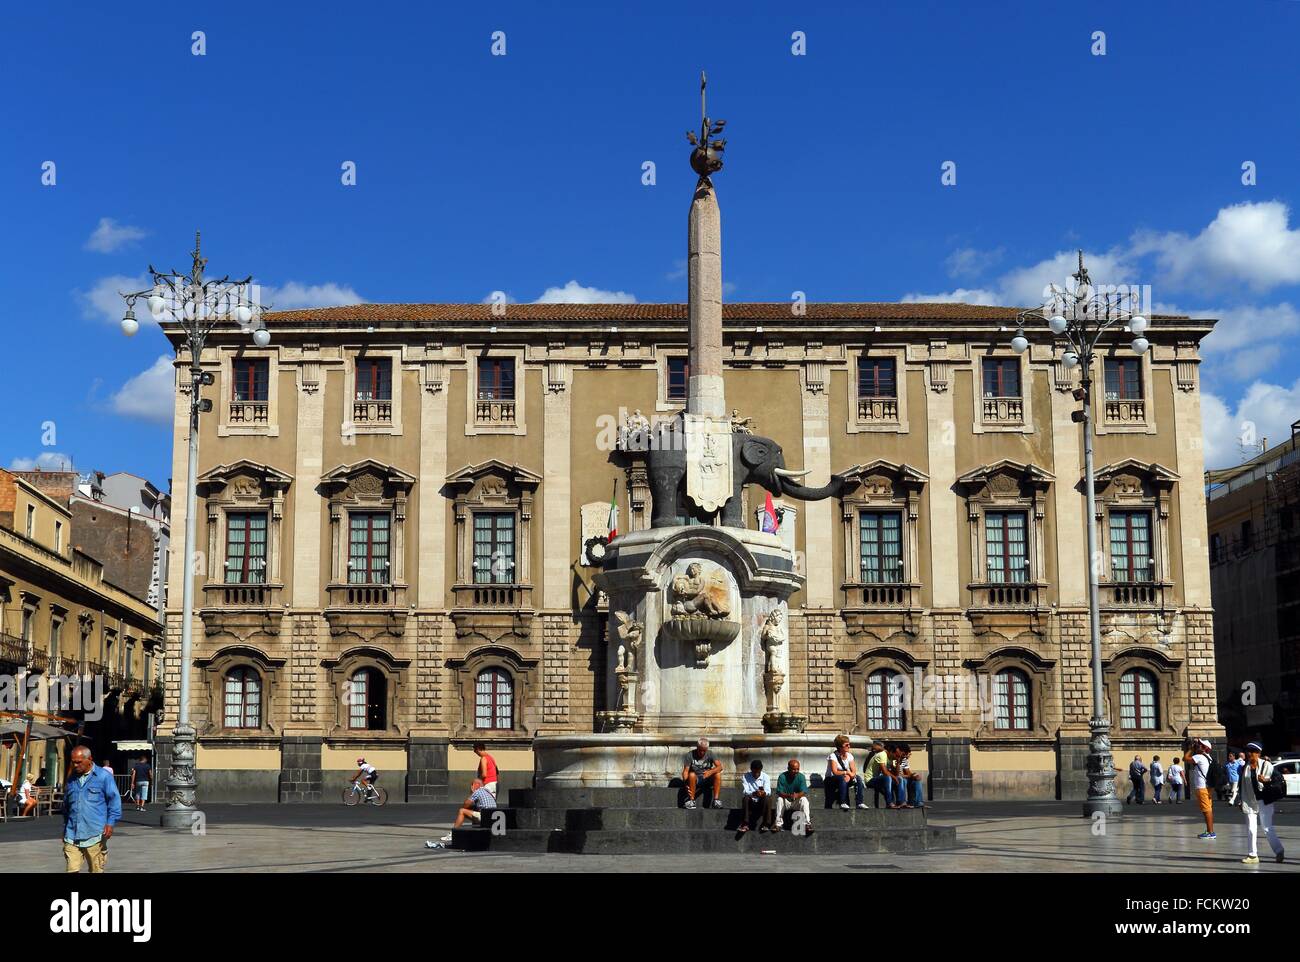 Palazzo degli Elefanti, éléphants Palace, Piazza del Duomo, la place centrale de la vieille ville de Catane, en face célèbre Fontana Banque D'Images